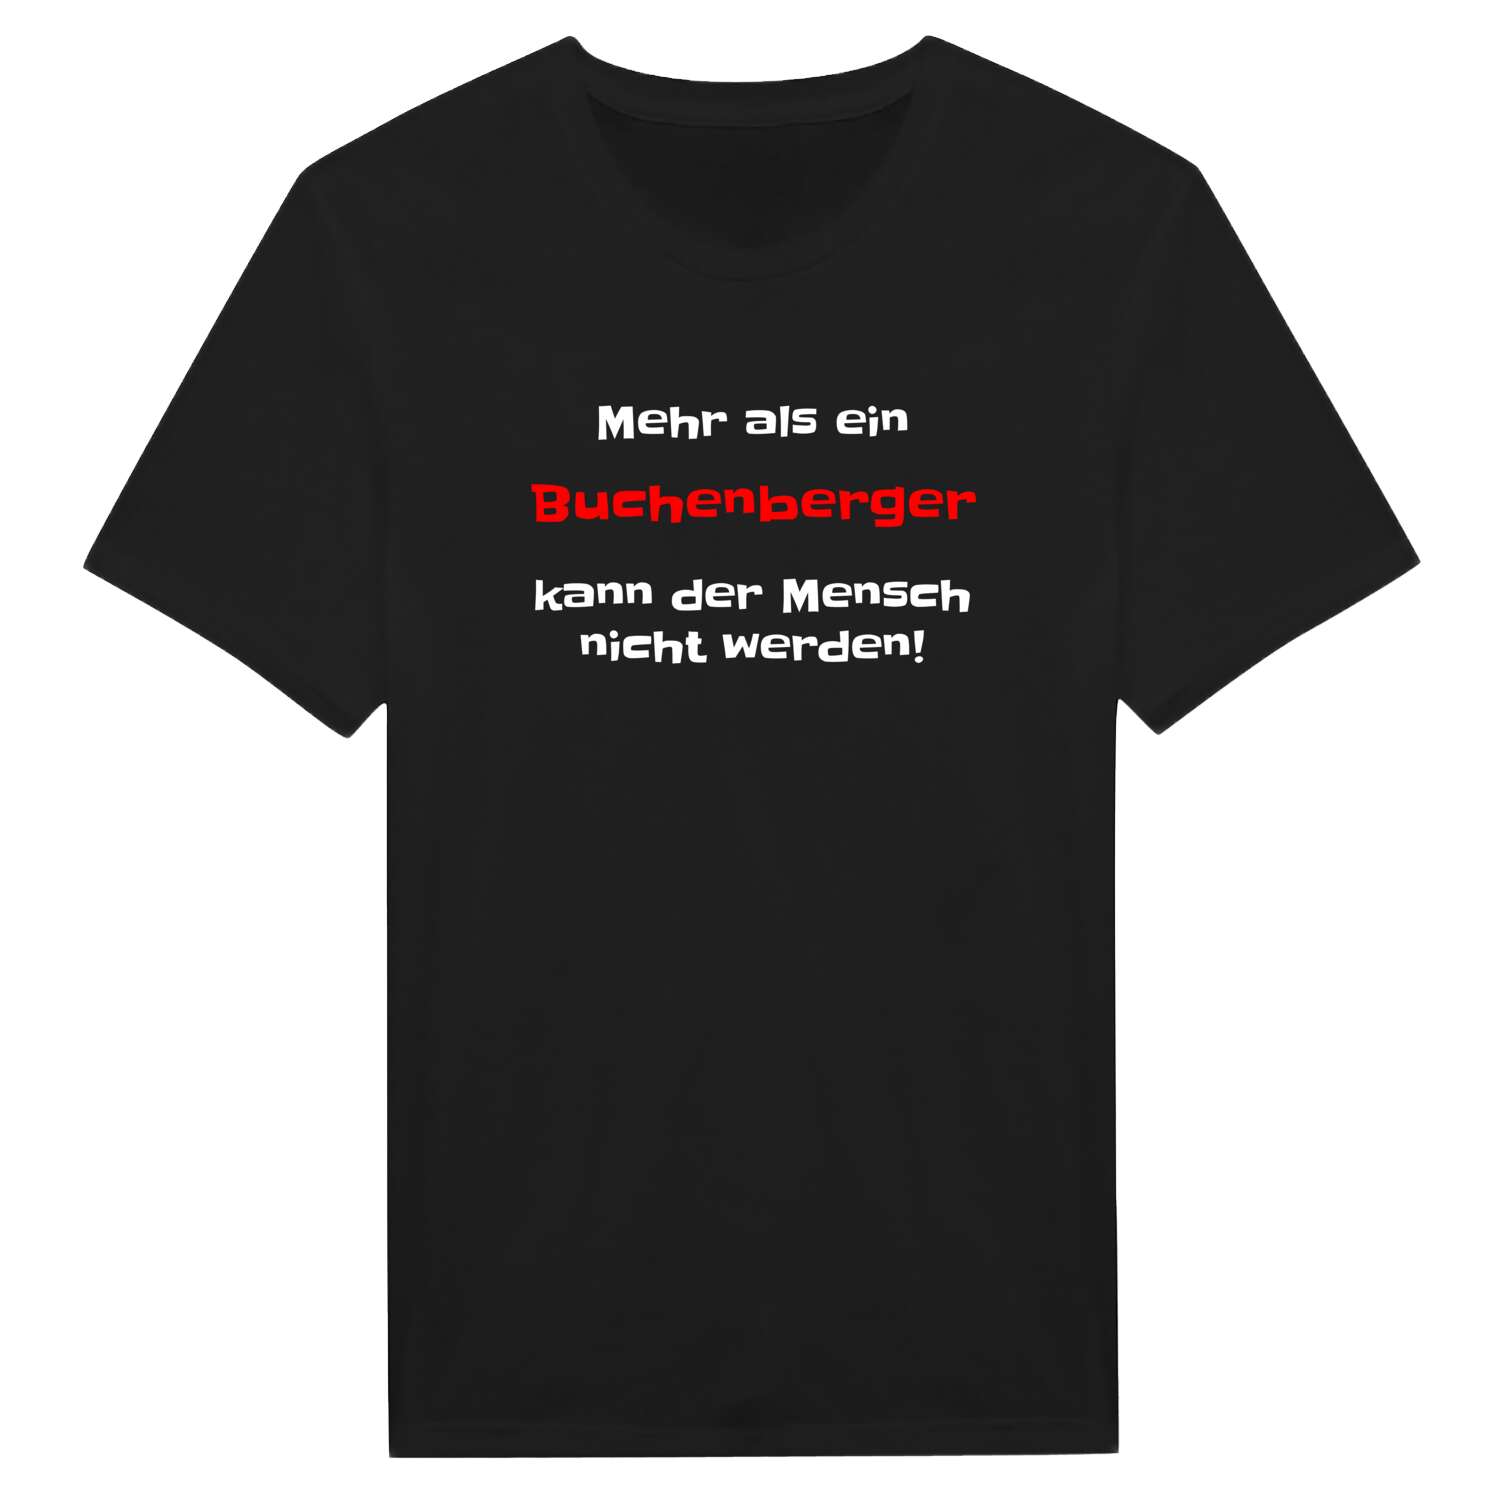 Buchenberg T-Shirt »Mehr als ein«